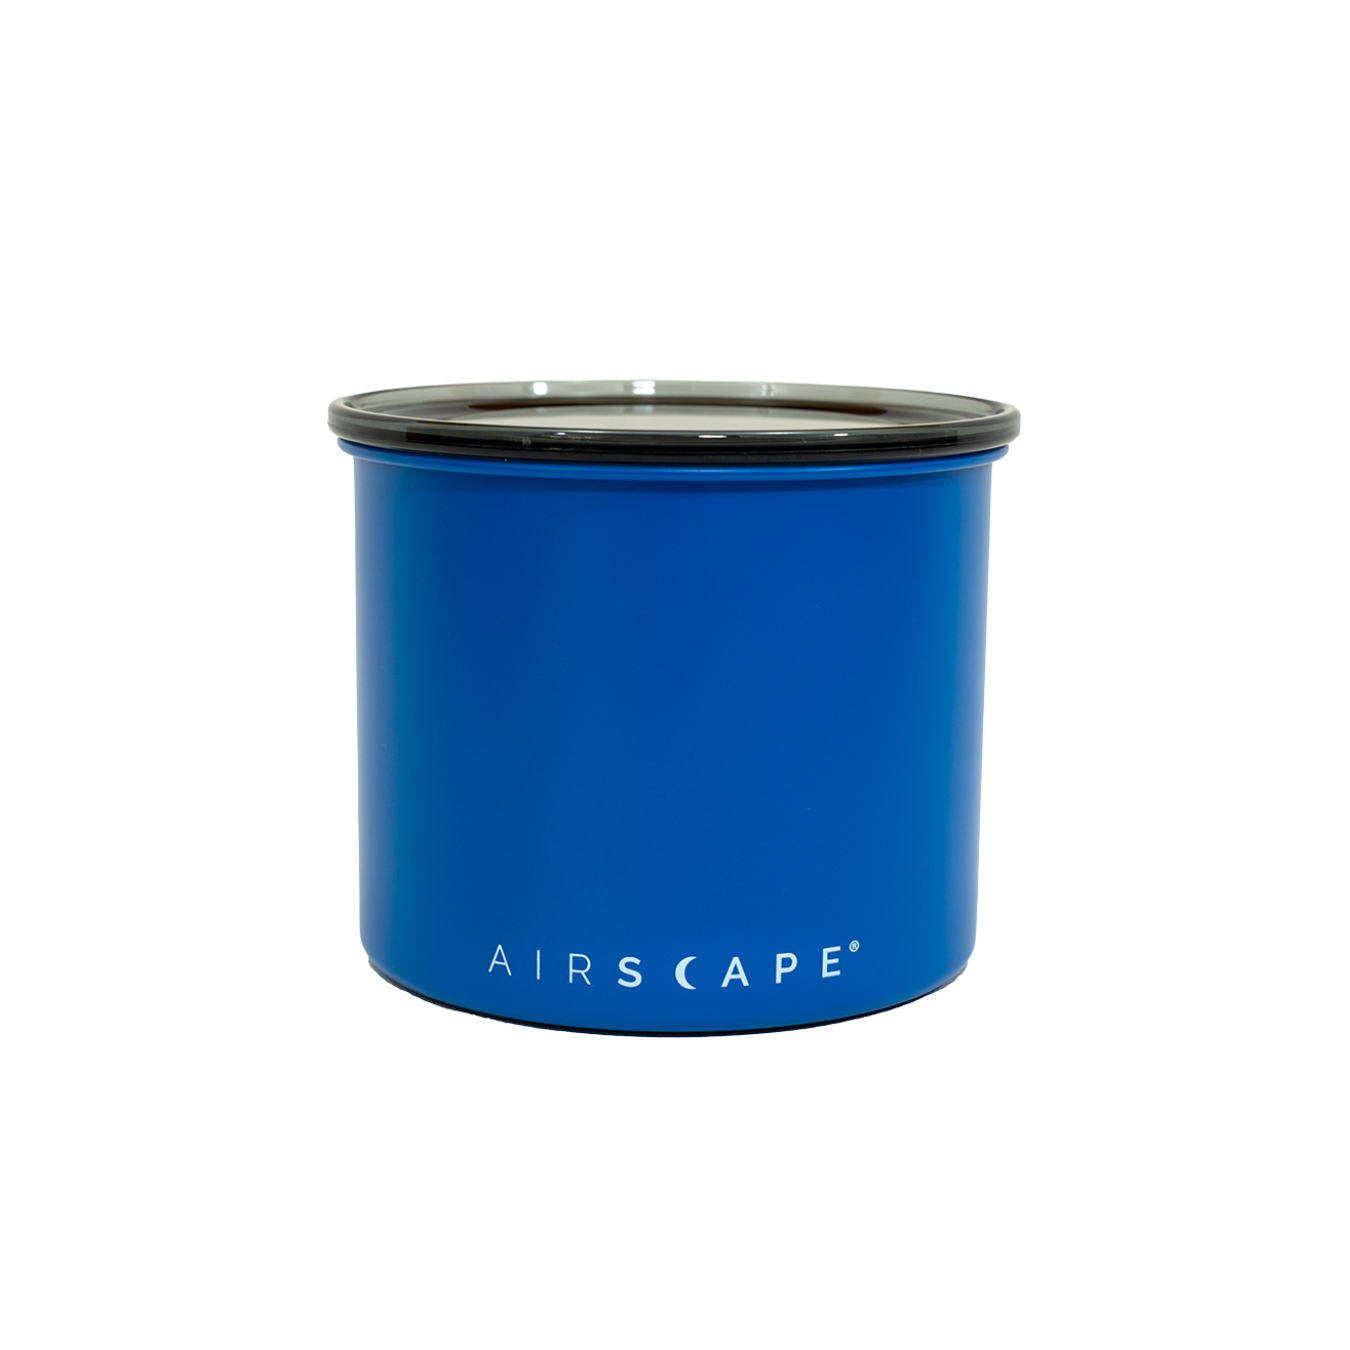 Airscape Classic  : Pote de Metal 250g (Azul Fosco)